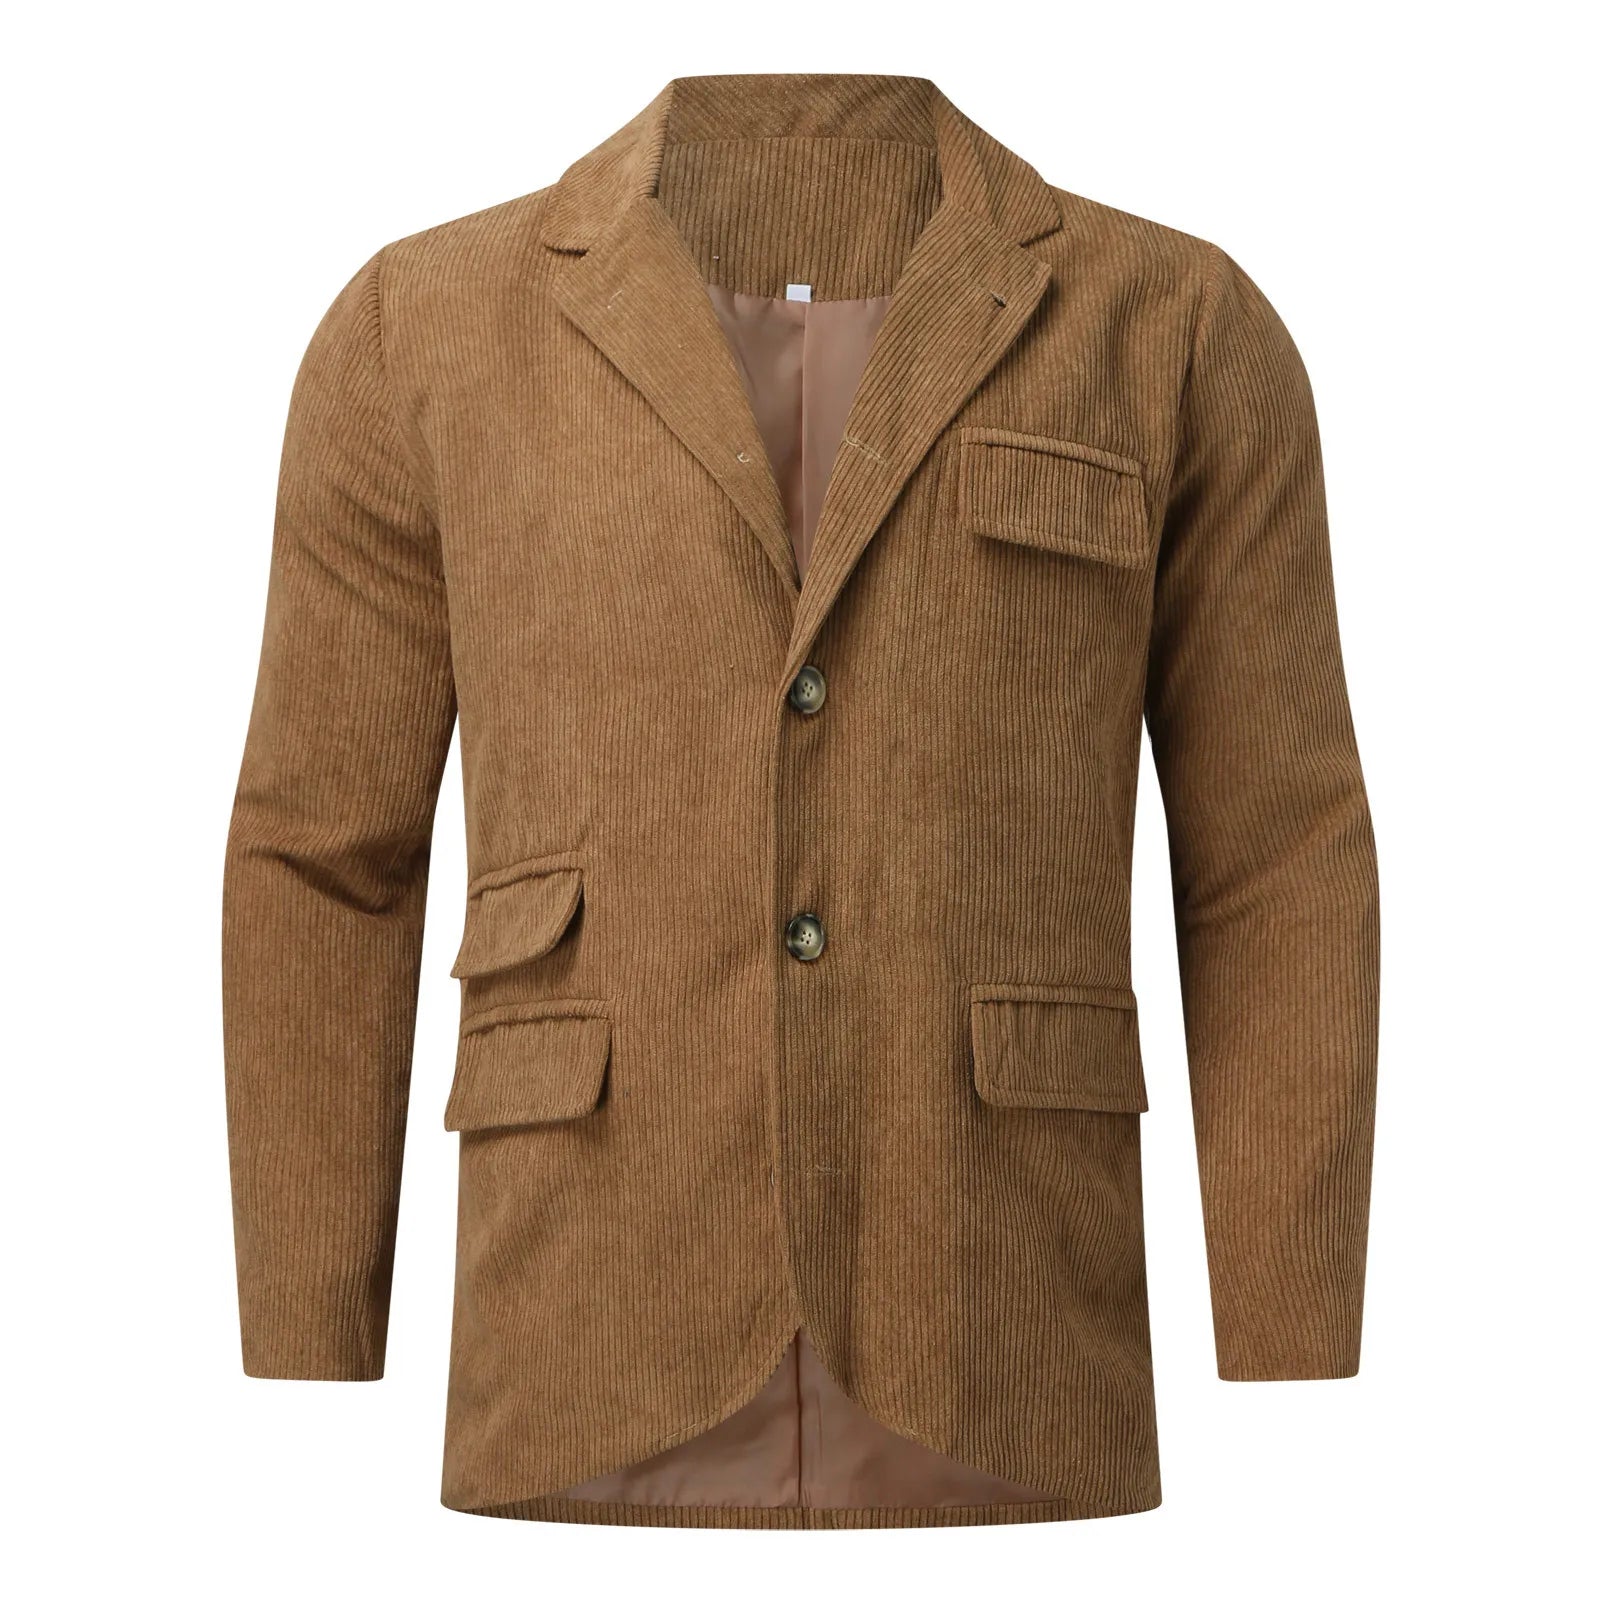 Vintage Retro Corduroy Blazer Coat Men's Casual  Fit Slim Jackets - S & R Enterprises